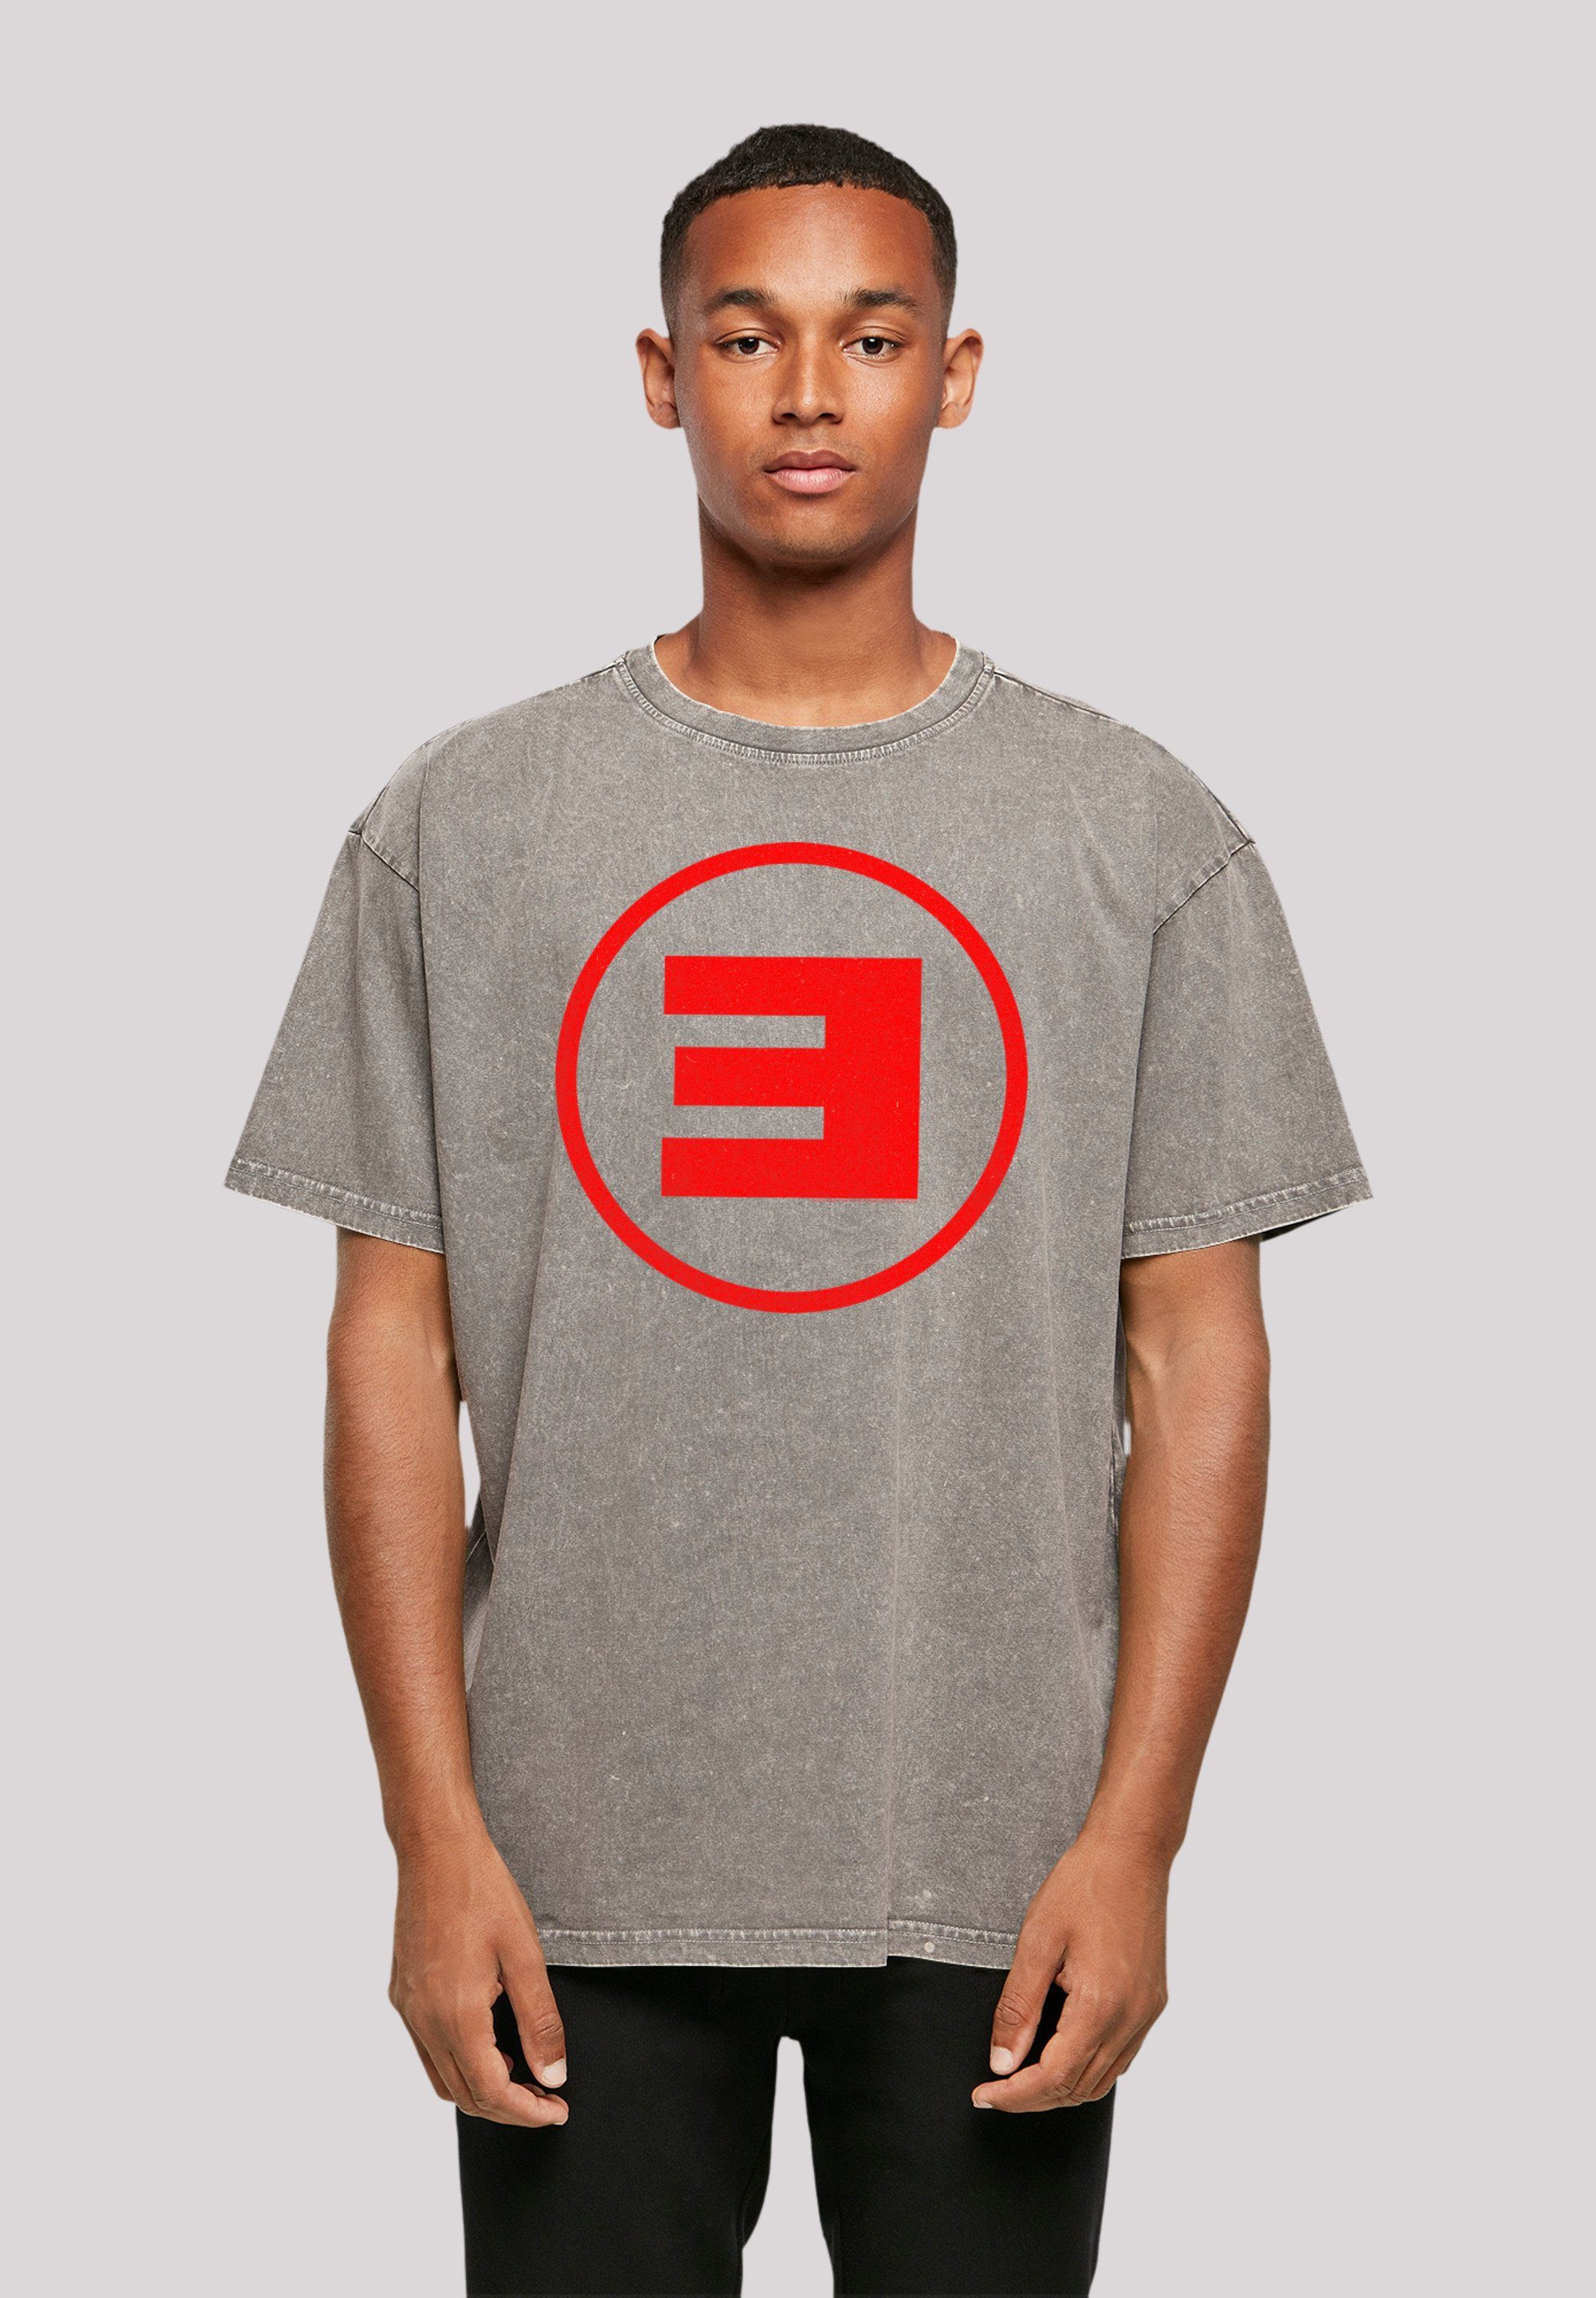 F4NT4STIC T-Shirt Eminem Circle E Rap Hip Hop Music Premium Qualität, Musik, By Rock Off Asphalt